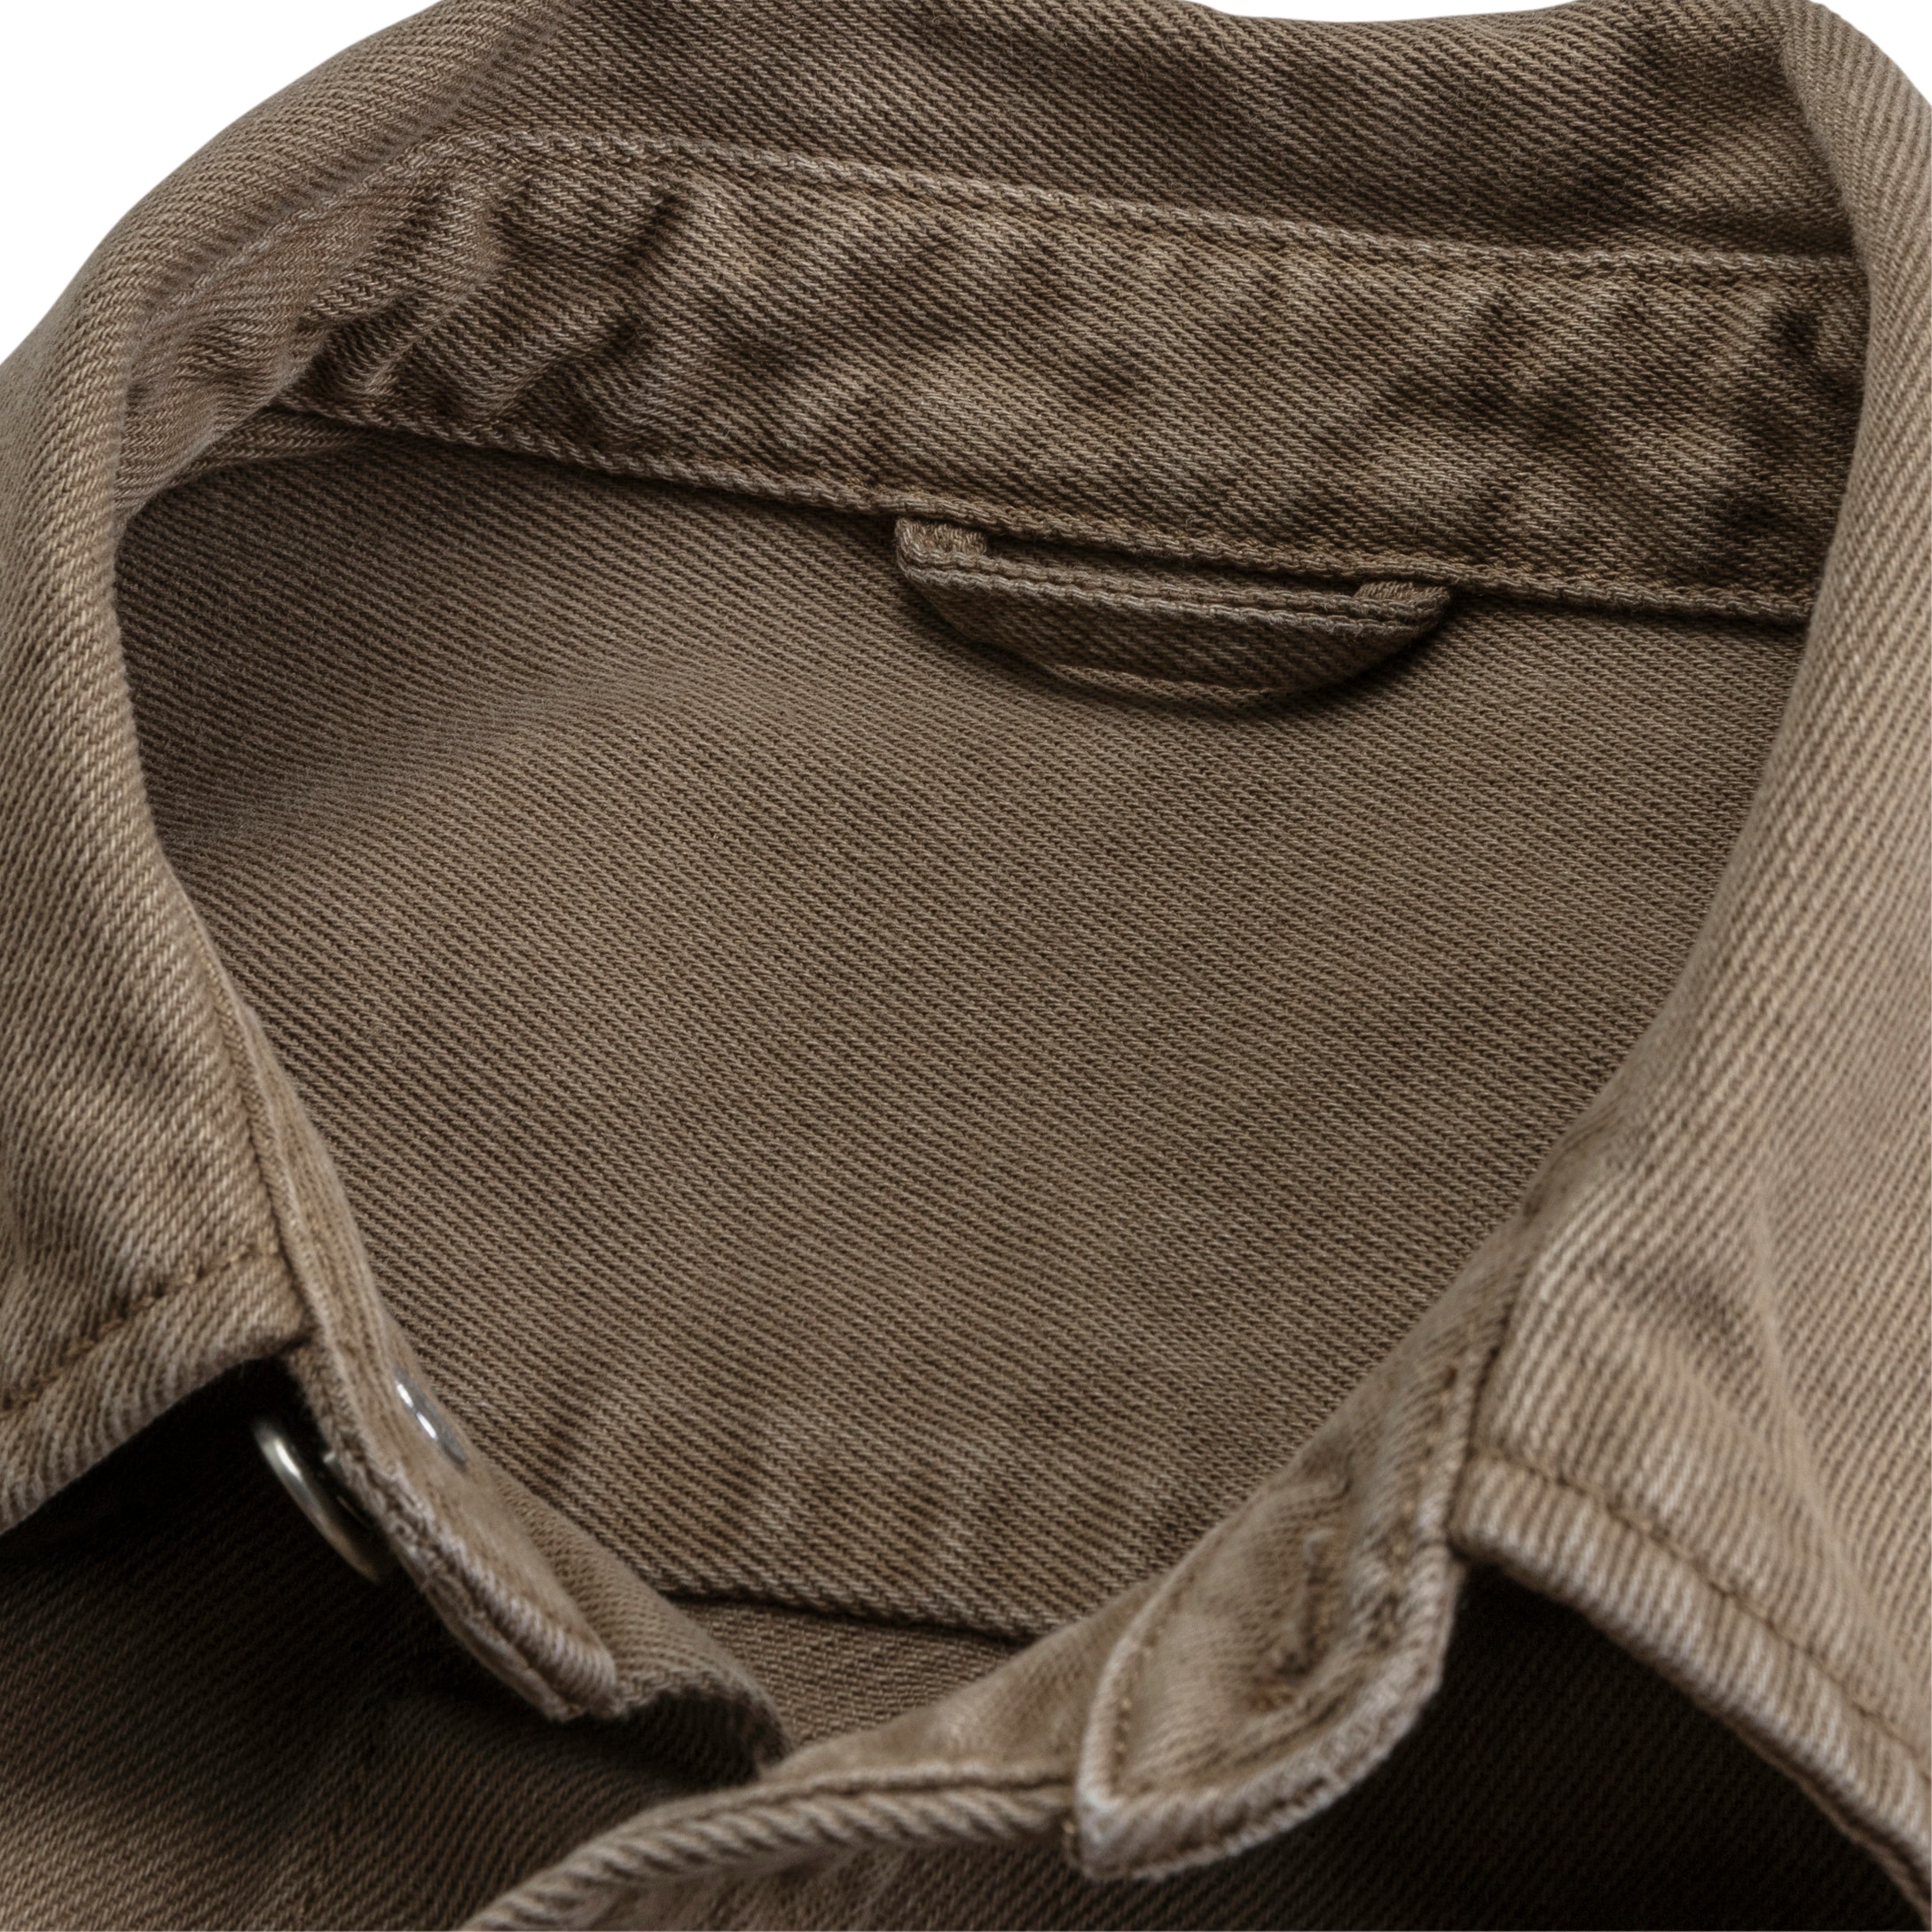 John Devin Hemdjacke », weites Overshirt«, aus Baumwolle, mit aufgesetzten Taschen